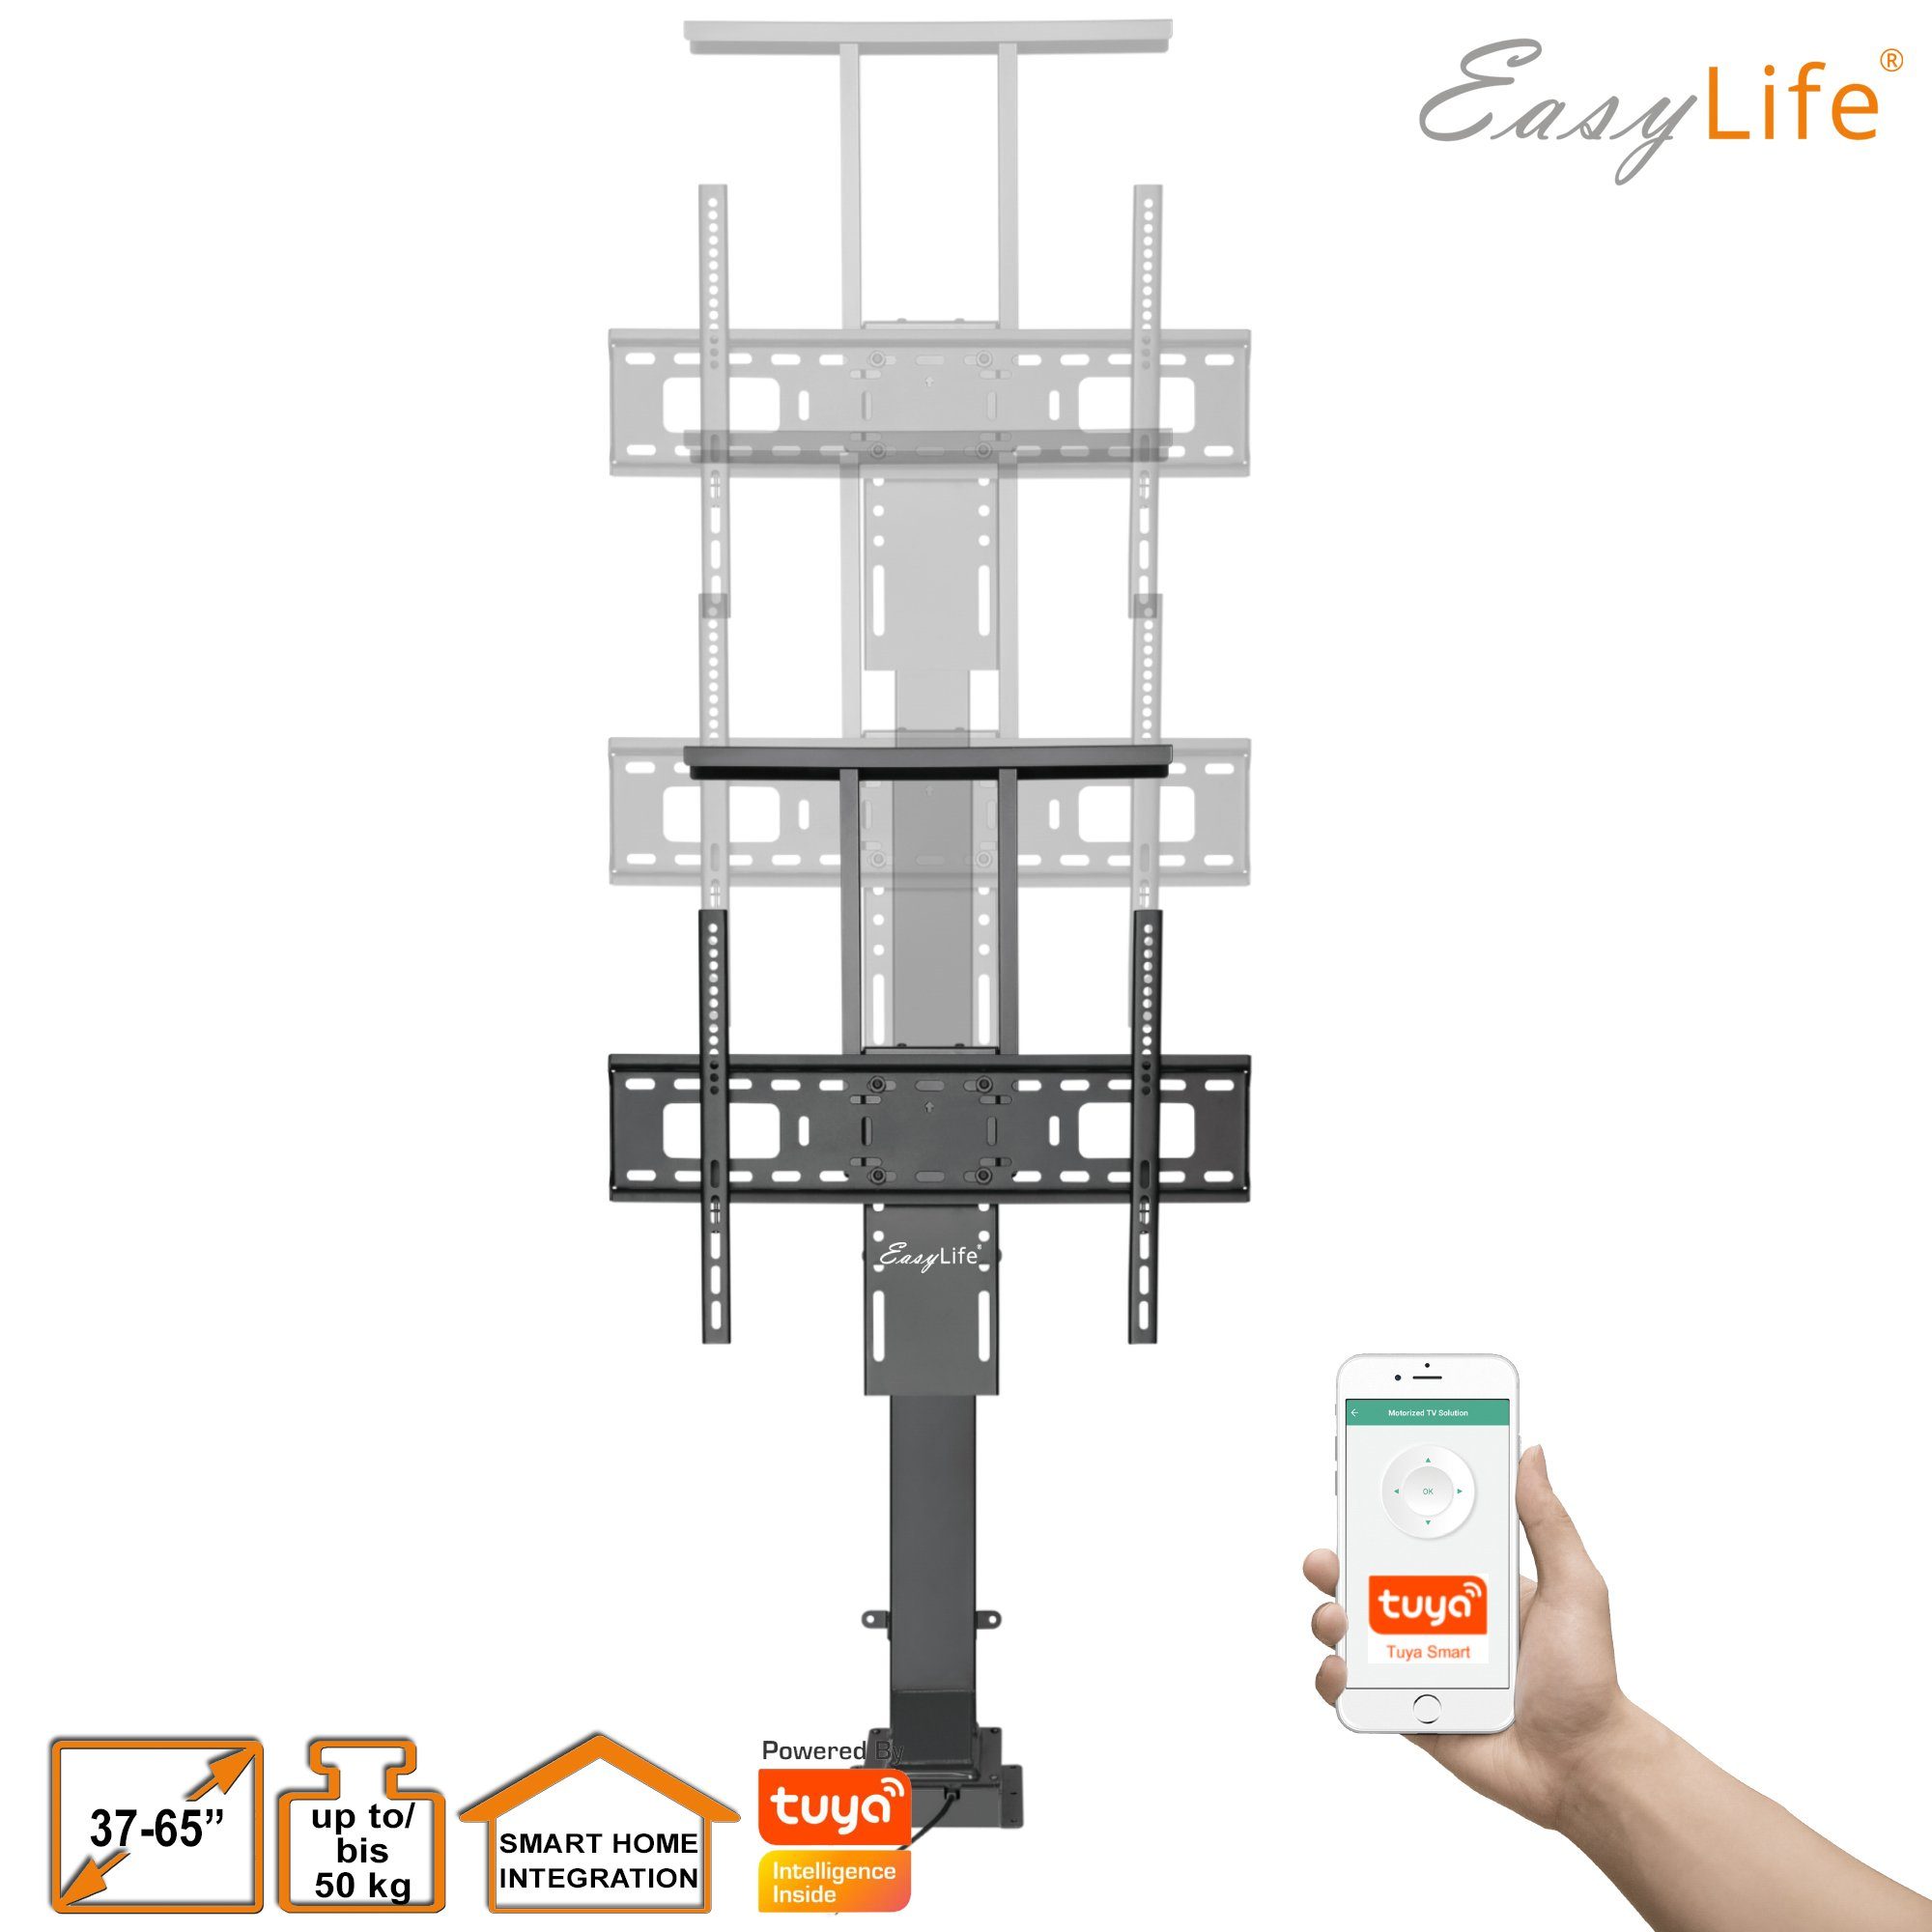 & Home elektrisch, Fernbedienung TV Smart TV-Ständer Bodenständer Lift/ Steuerung easylife